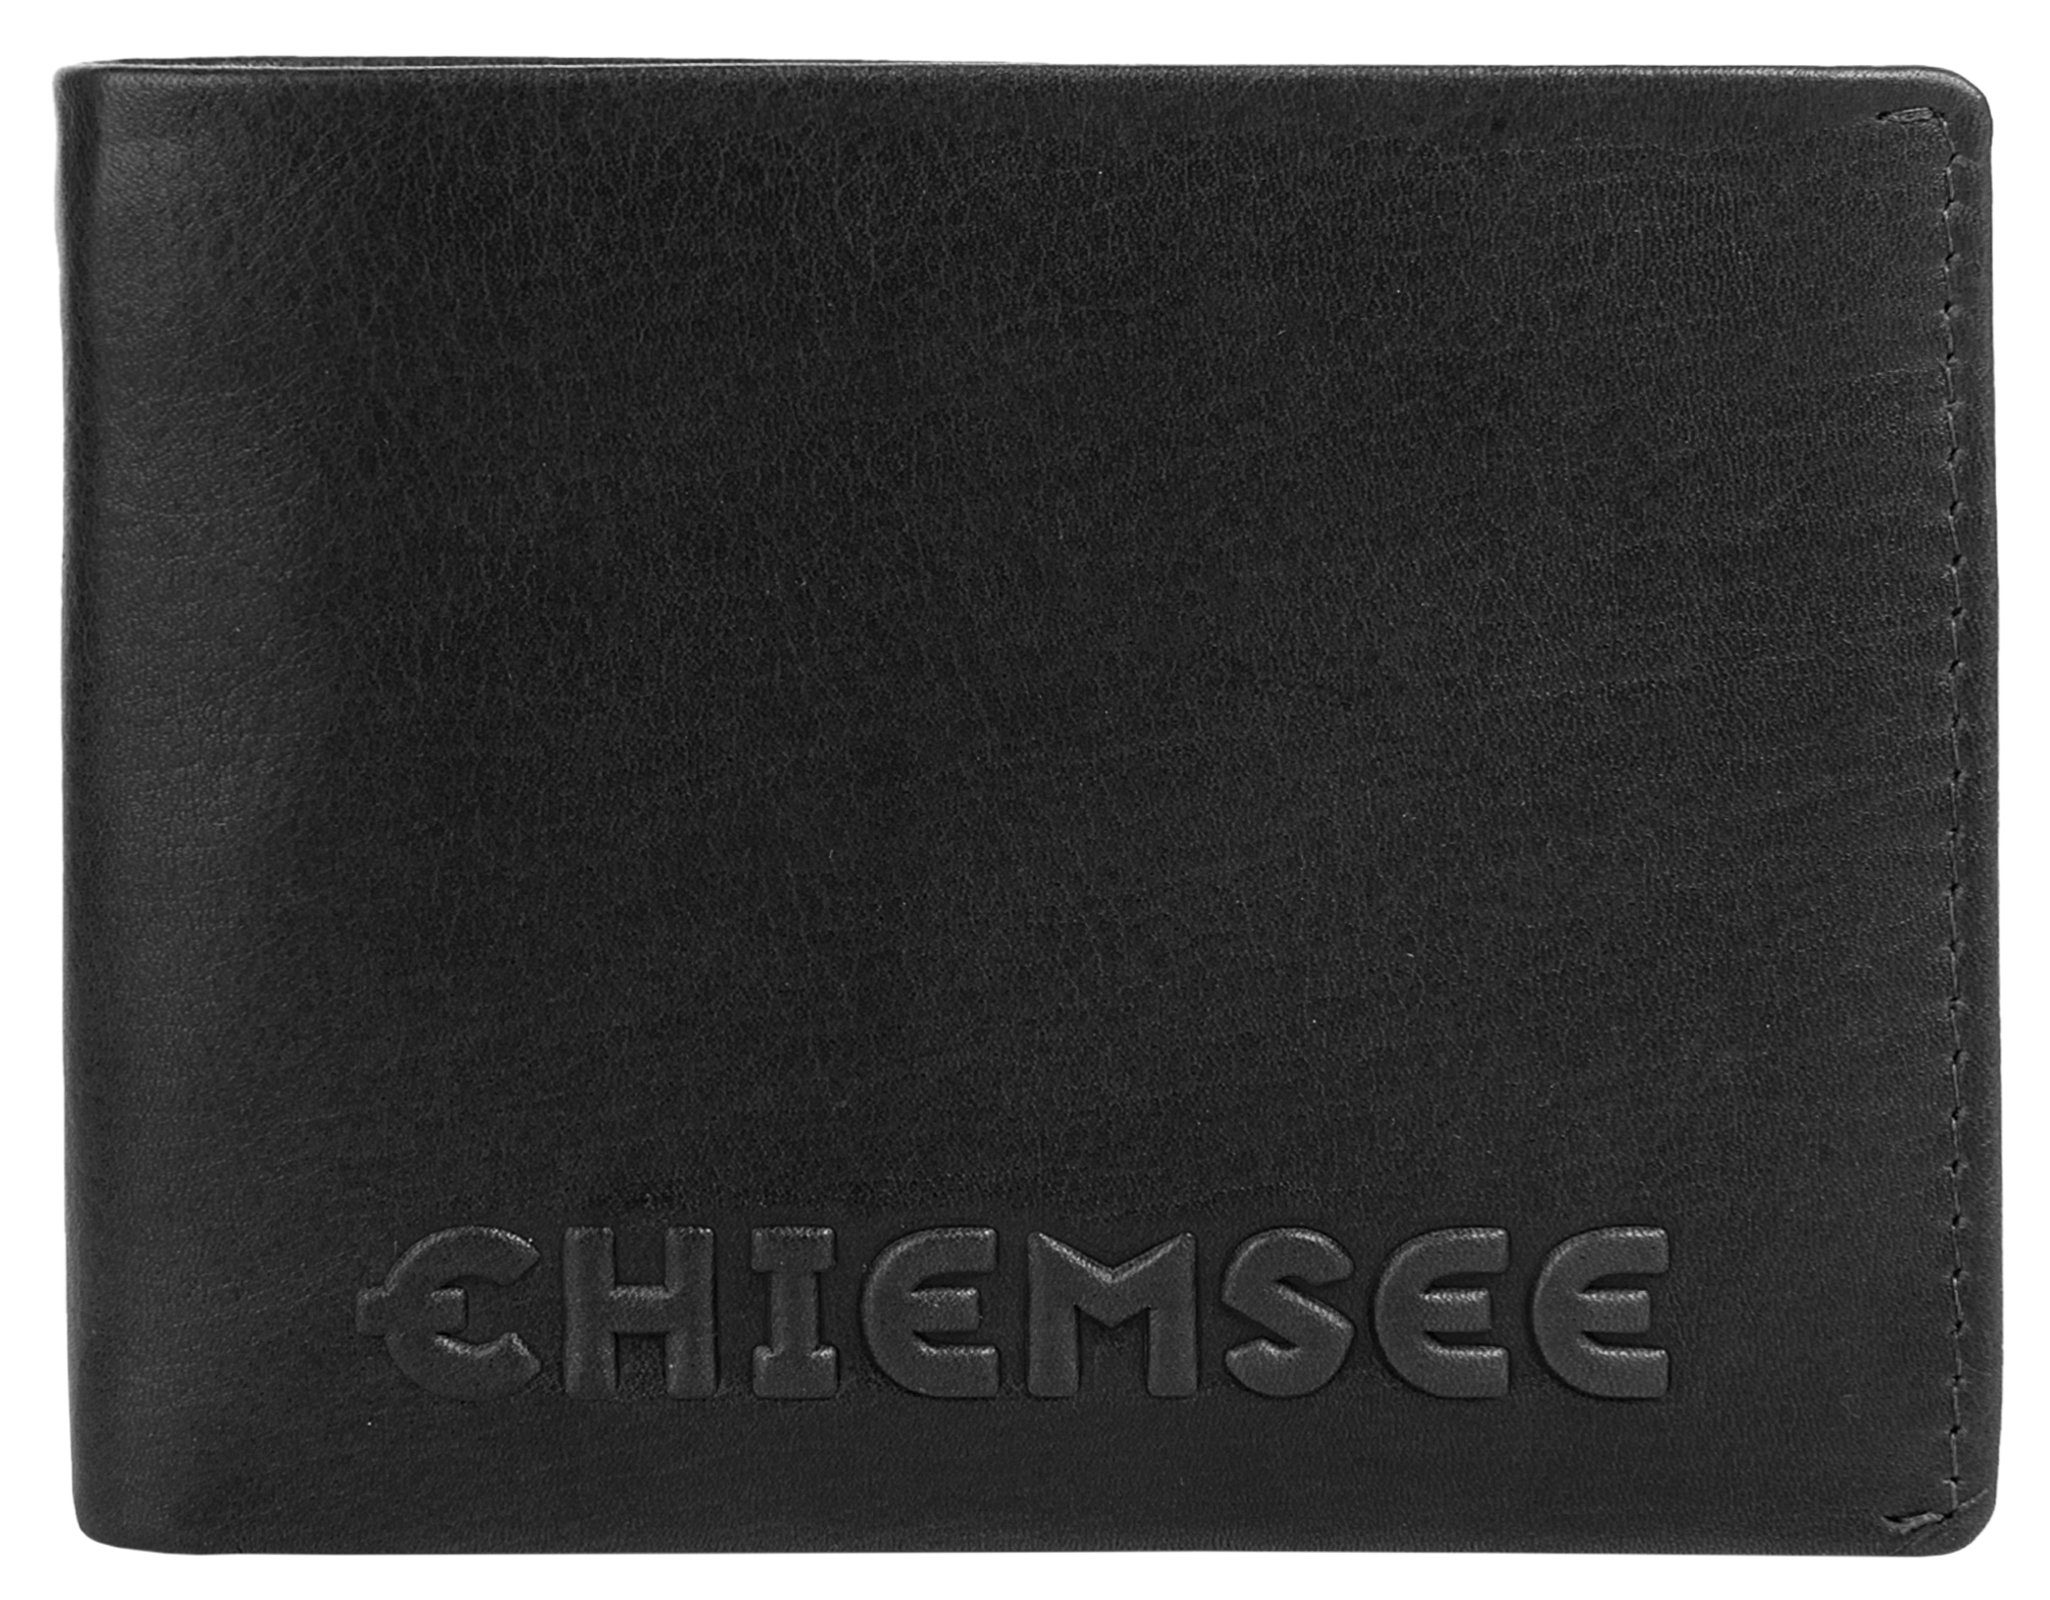 Chiemsee Geldbörse LAOS, echt schwarz Leder